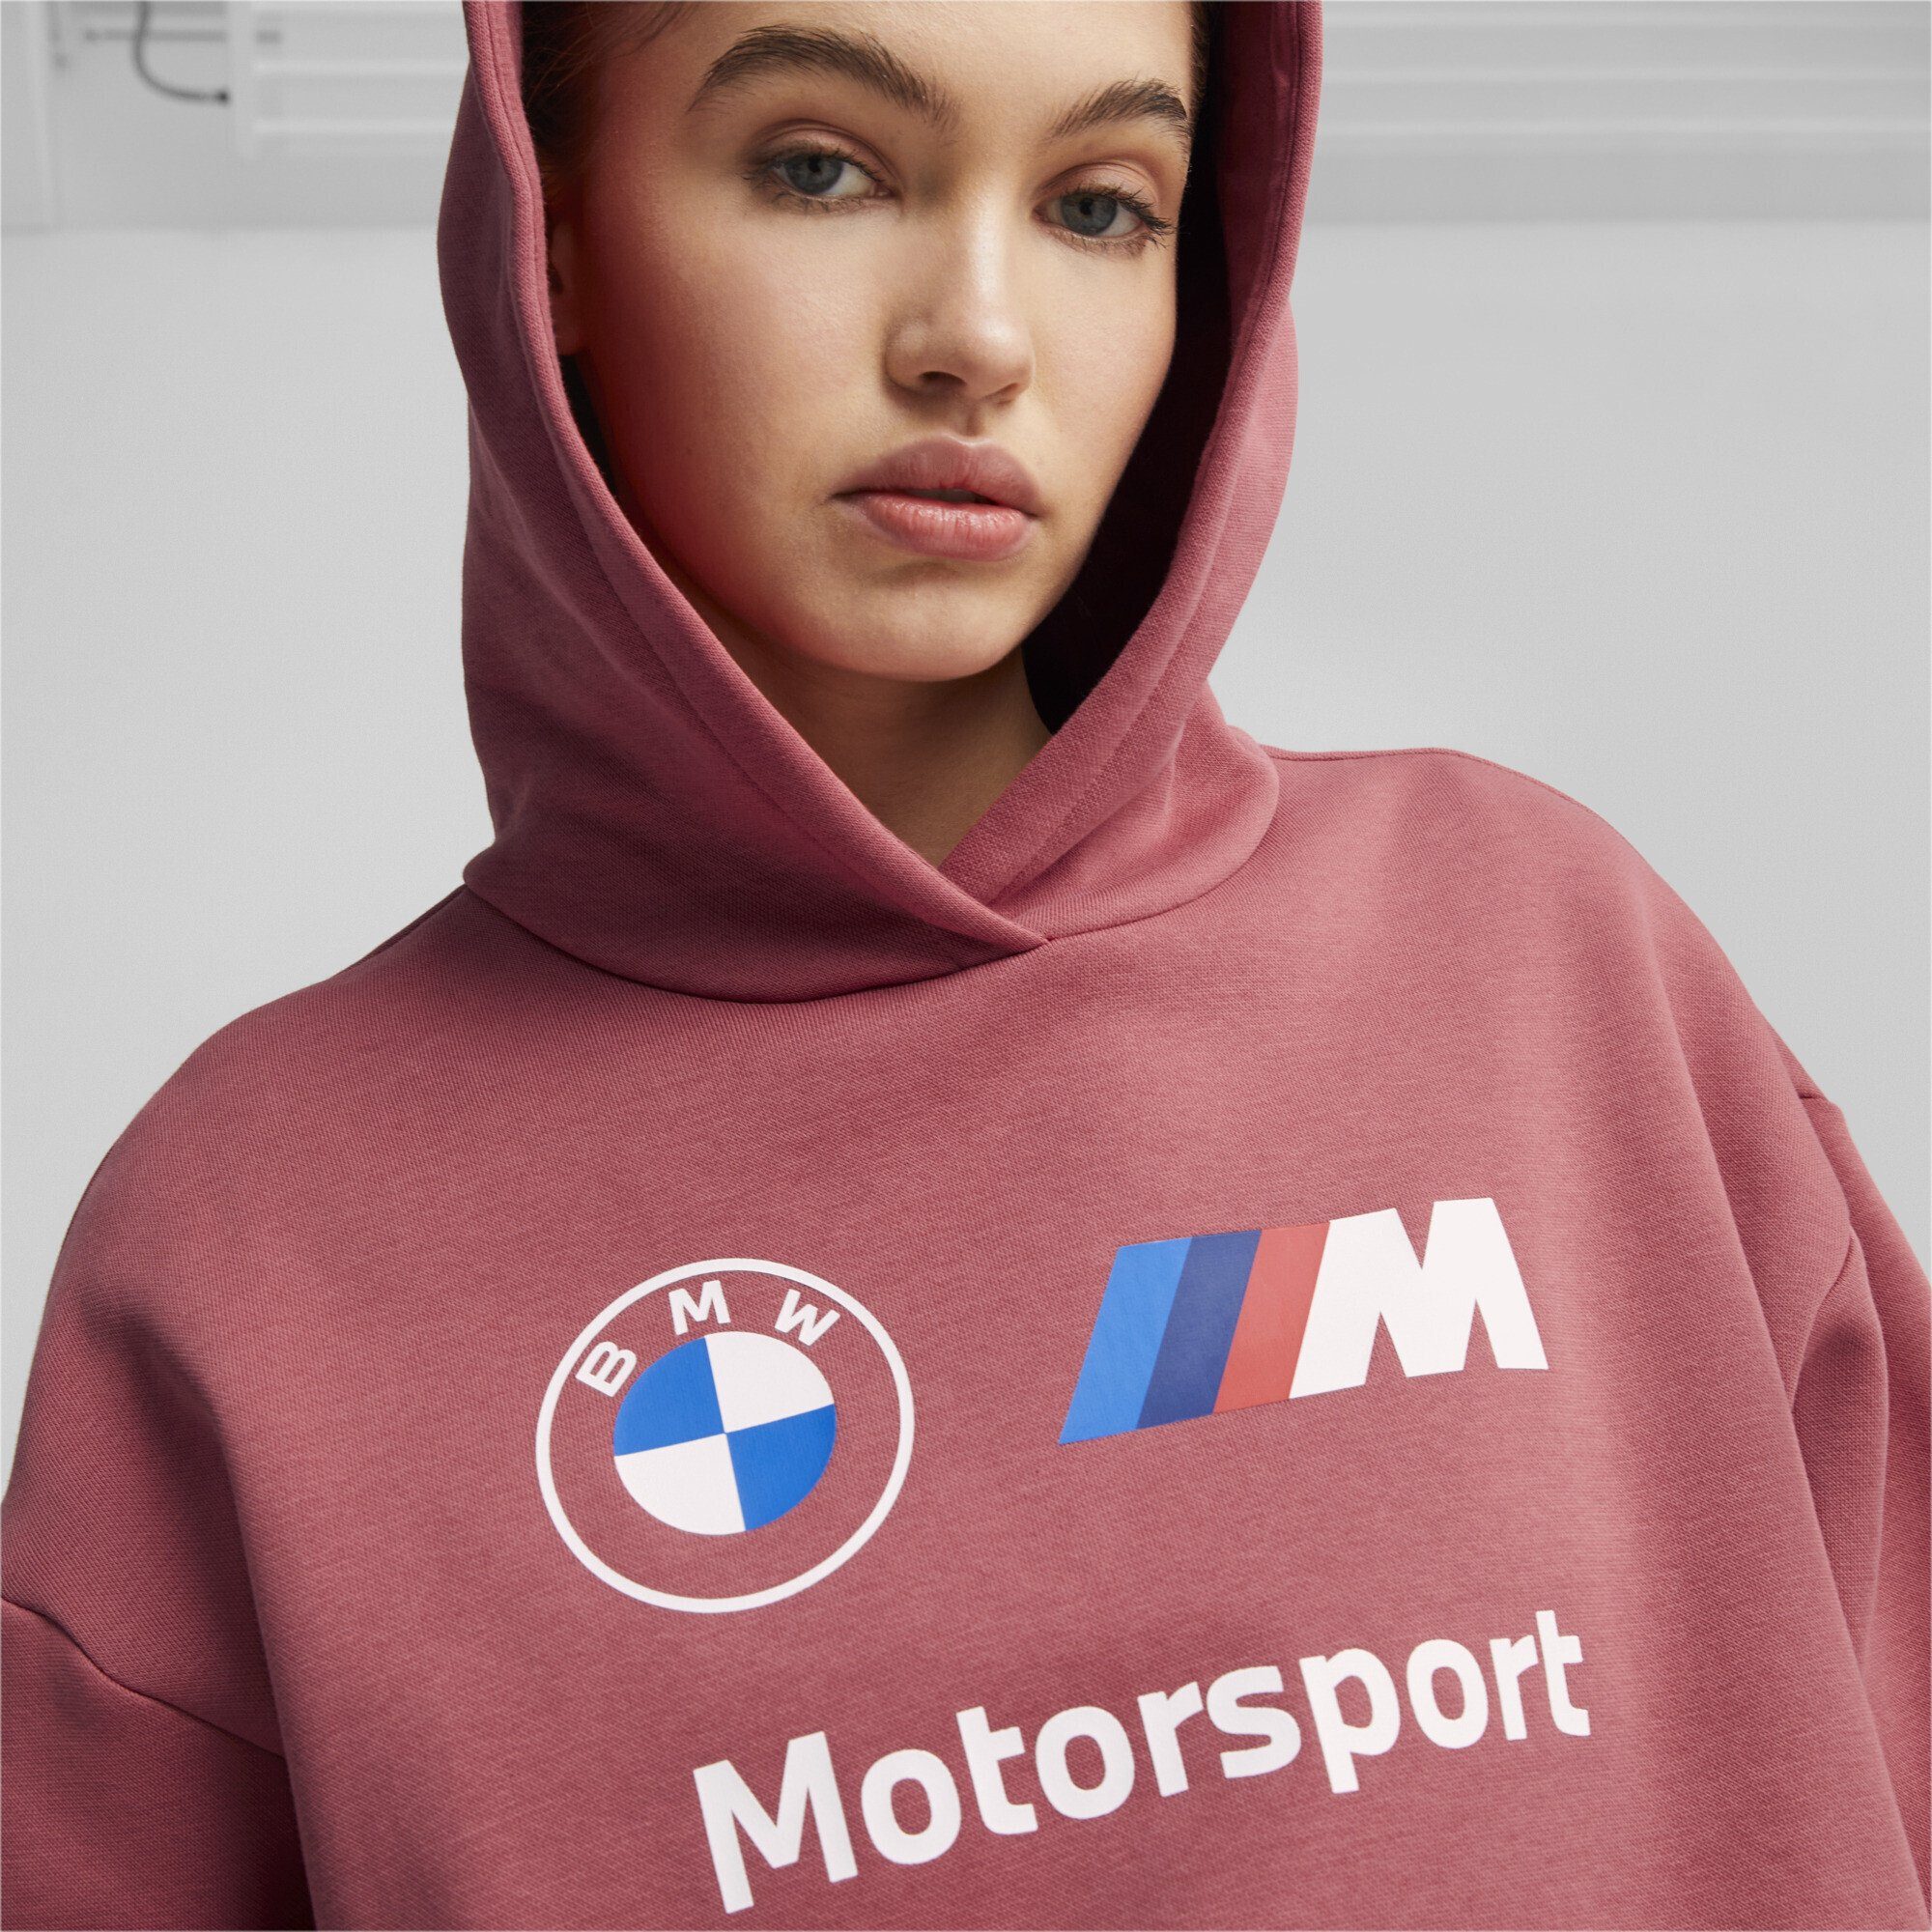 M Hoodie Motorsport Damen BMW PUMA Sweatshirt Red Astro Essentials